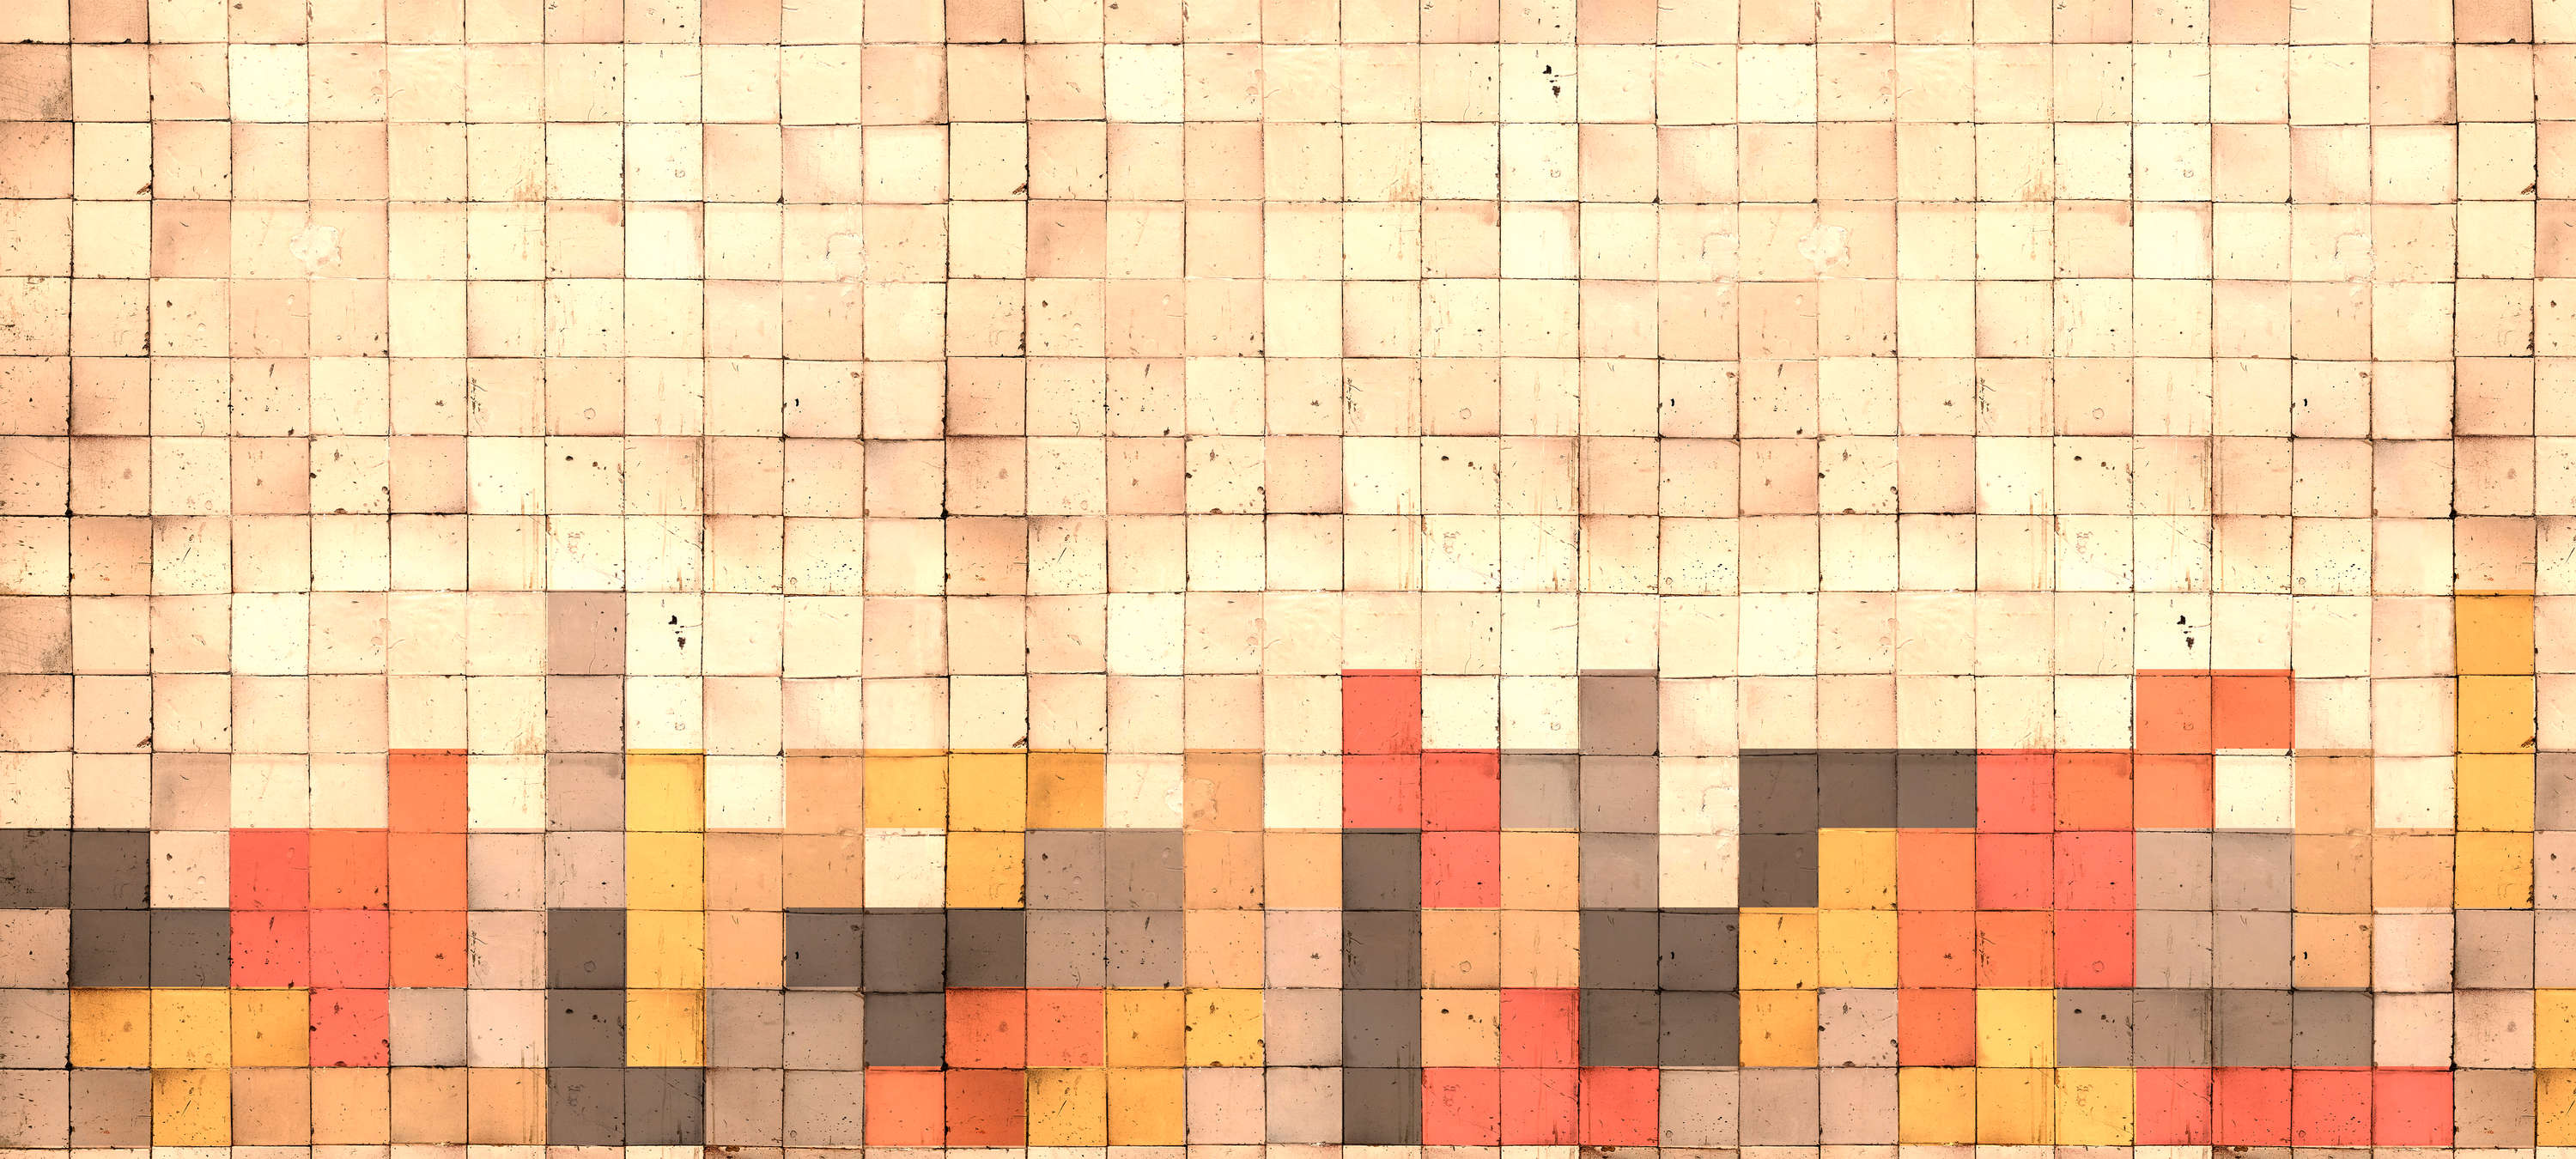             Mural de pared estilo Tetris, hormigón 3D, mosaico de cubos - Amarillo, Naranja, Rojo
        